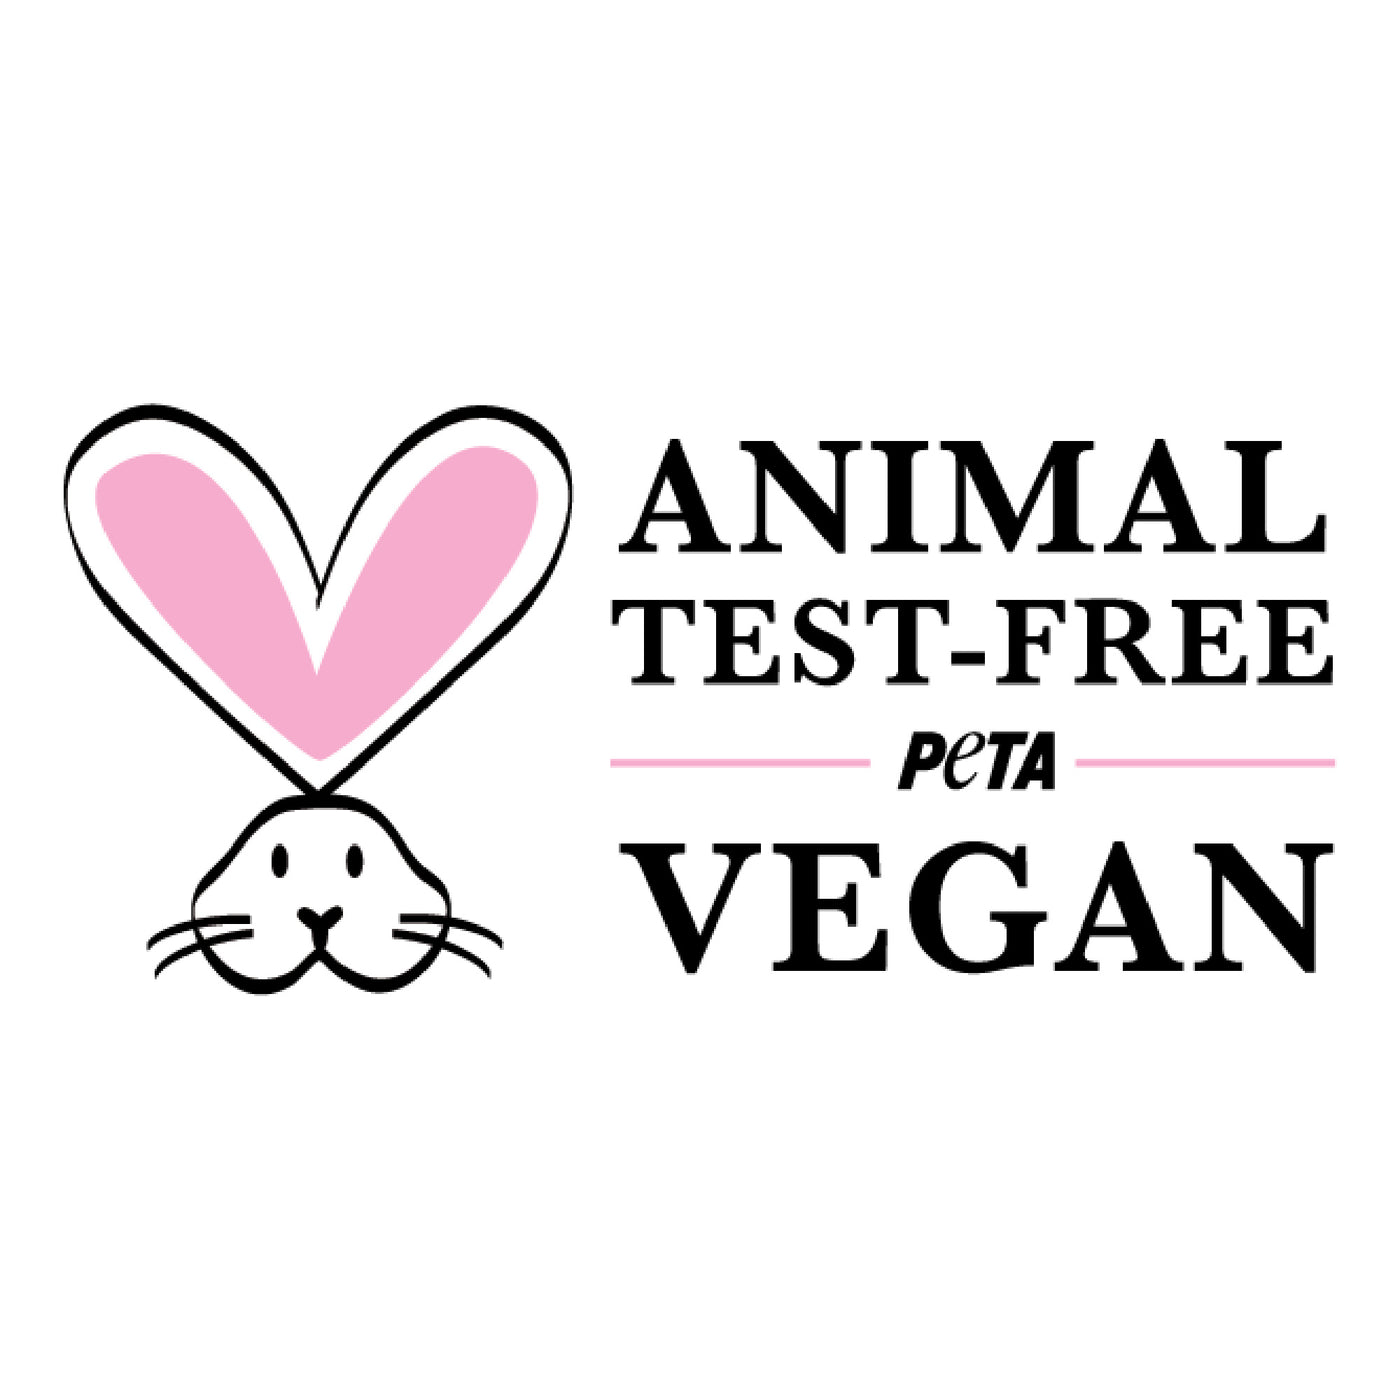 PETA symbol - Animal Test-Free and Vegan